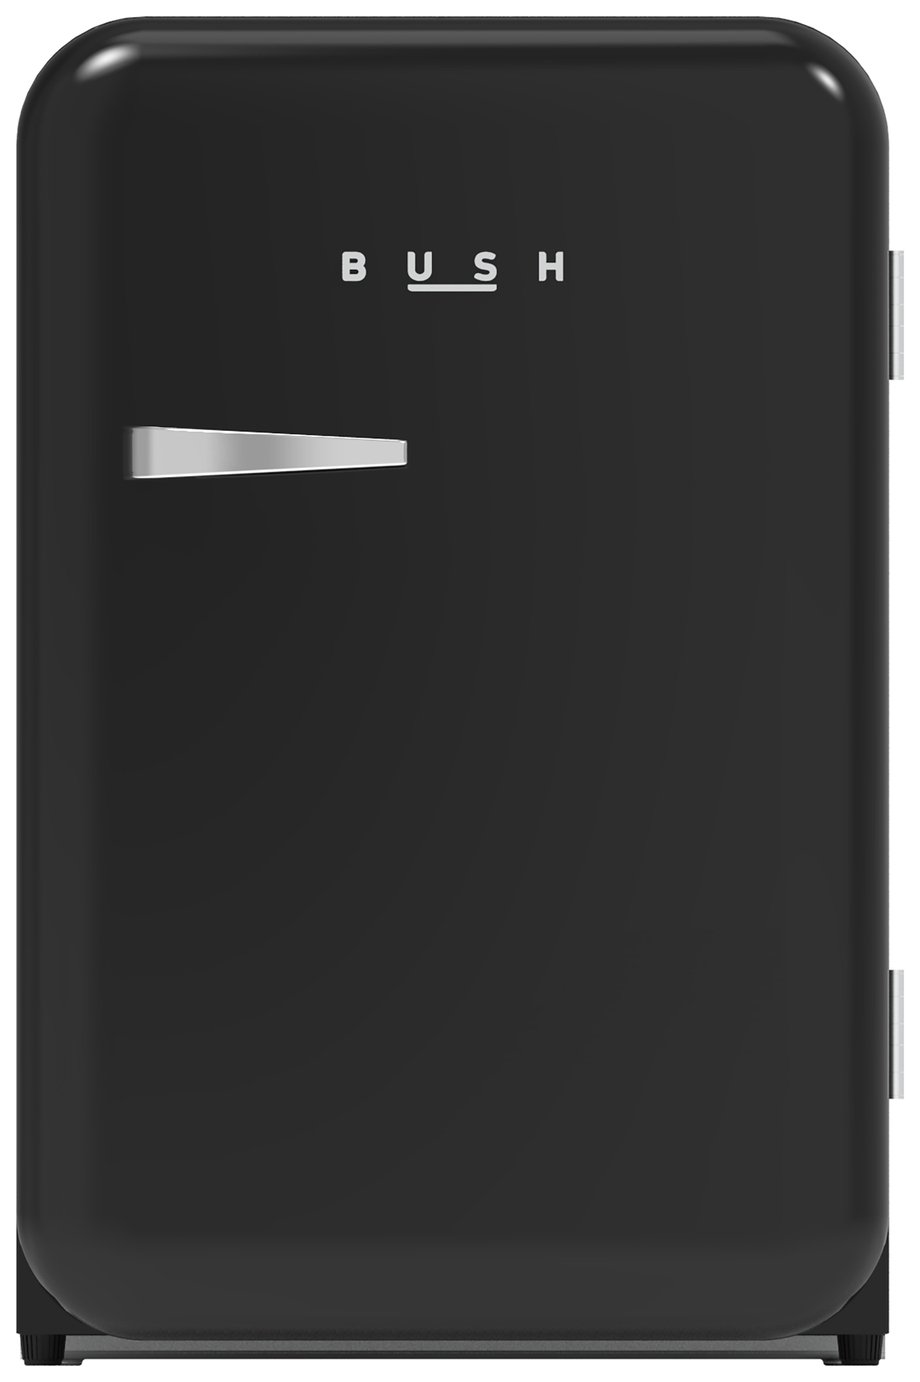 Bush MUCFR55BLK Retro Under Counter Freezer - Black